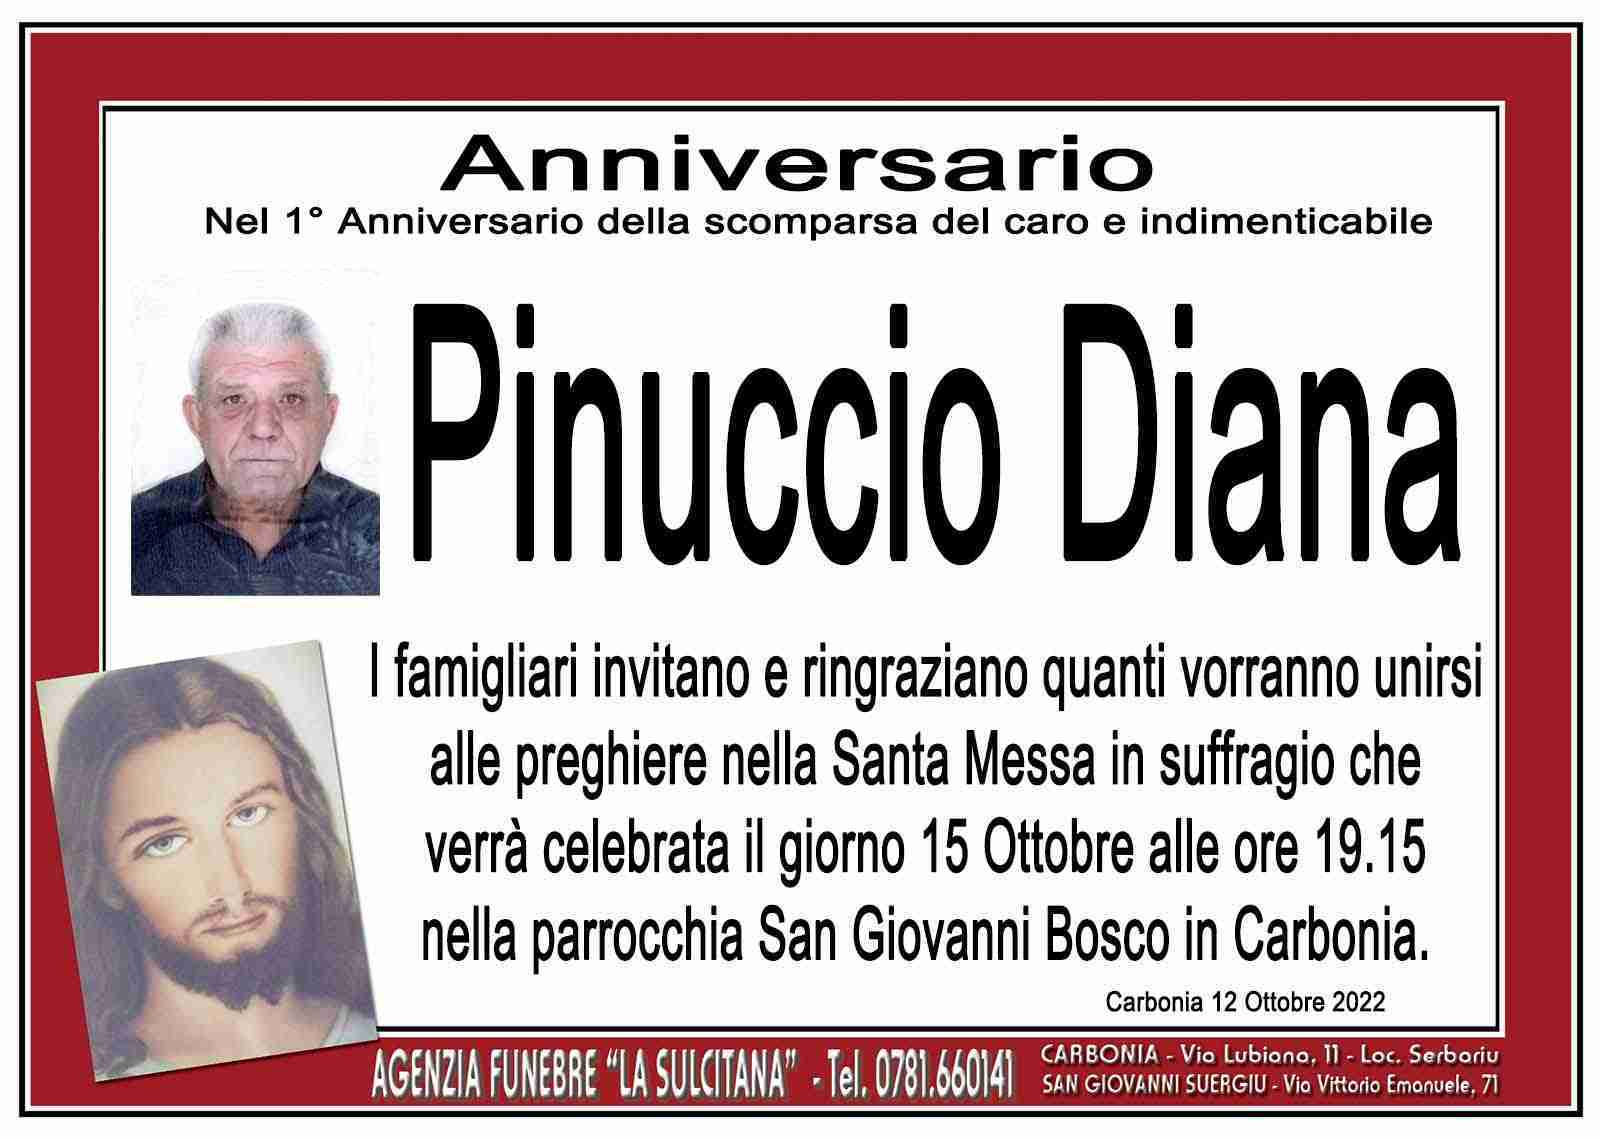 Pinuccio Diana